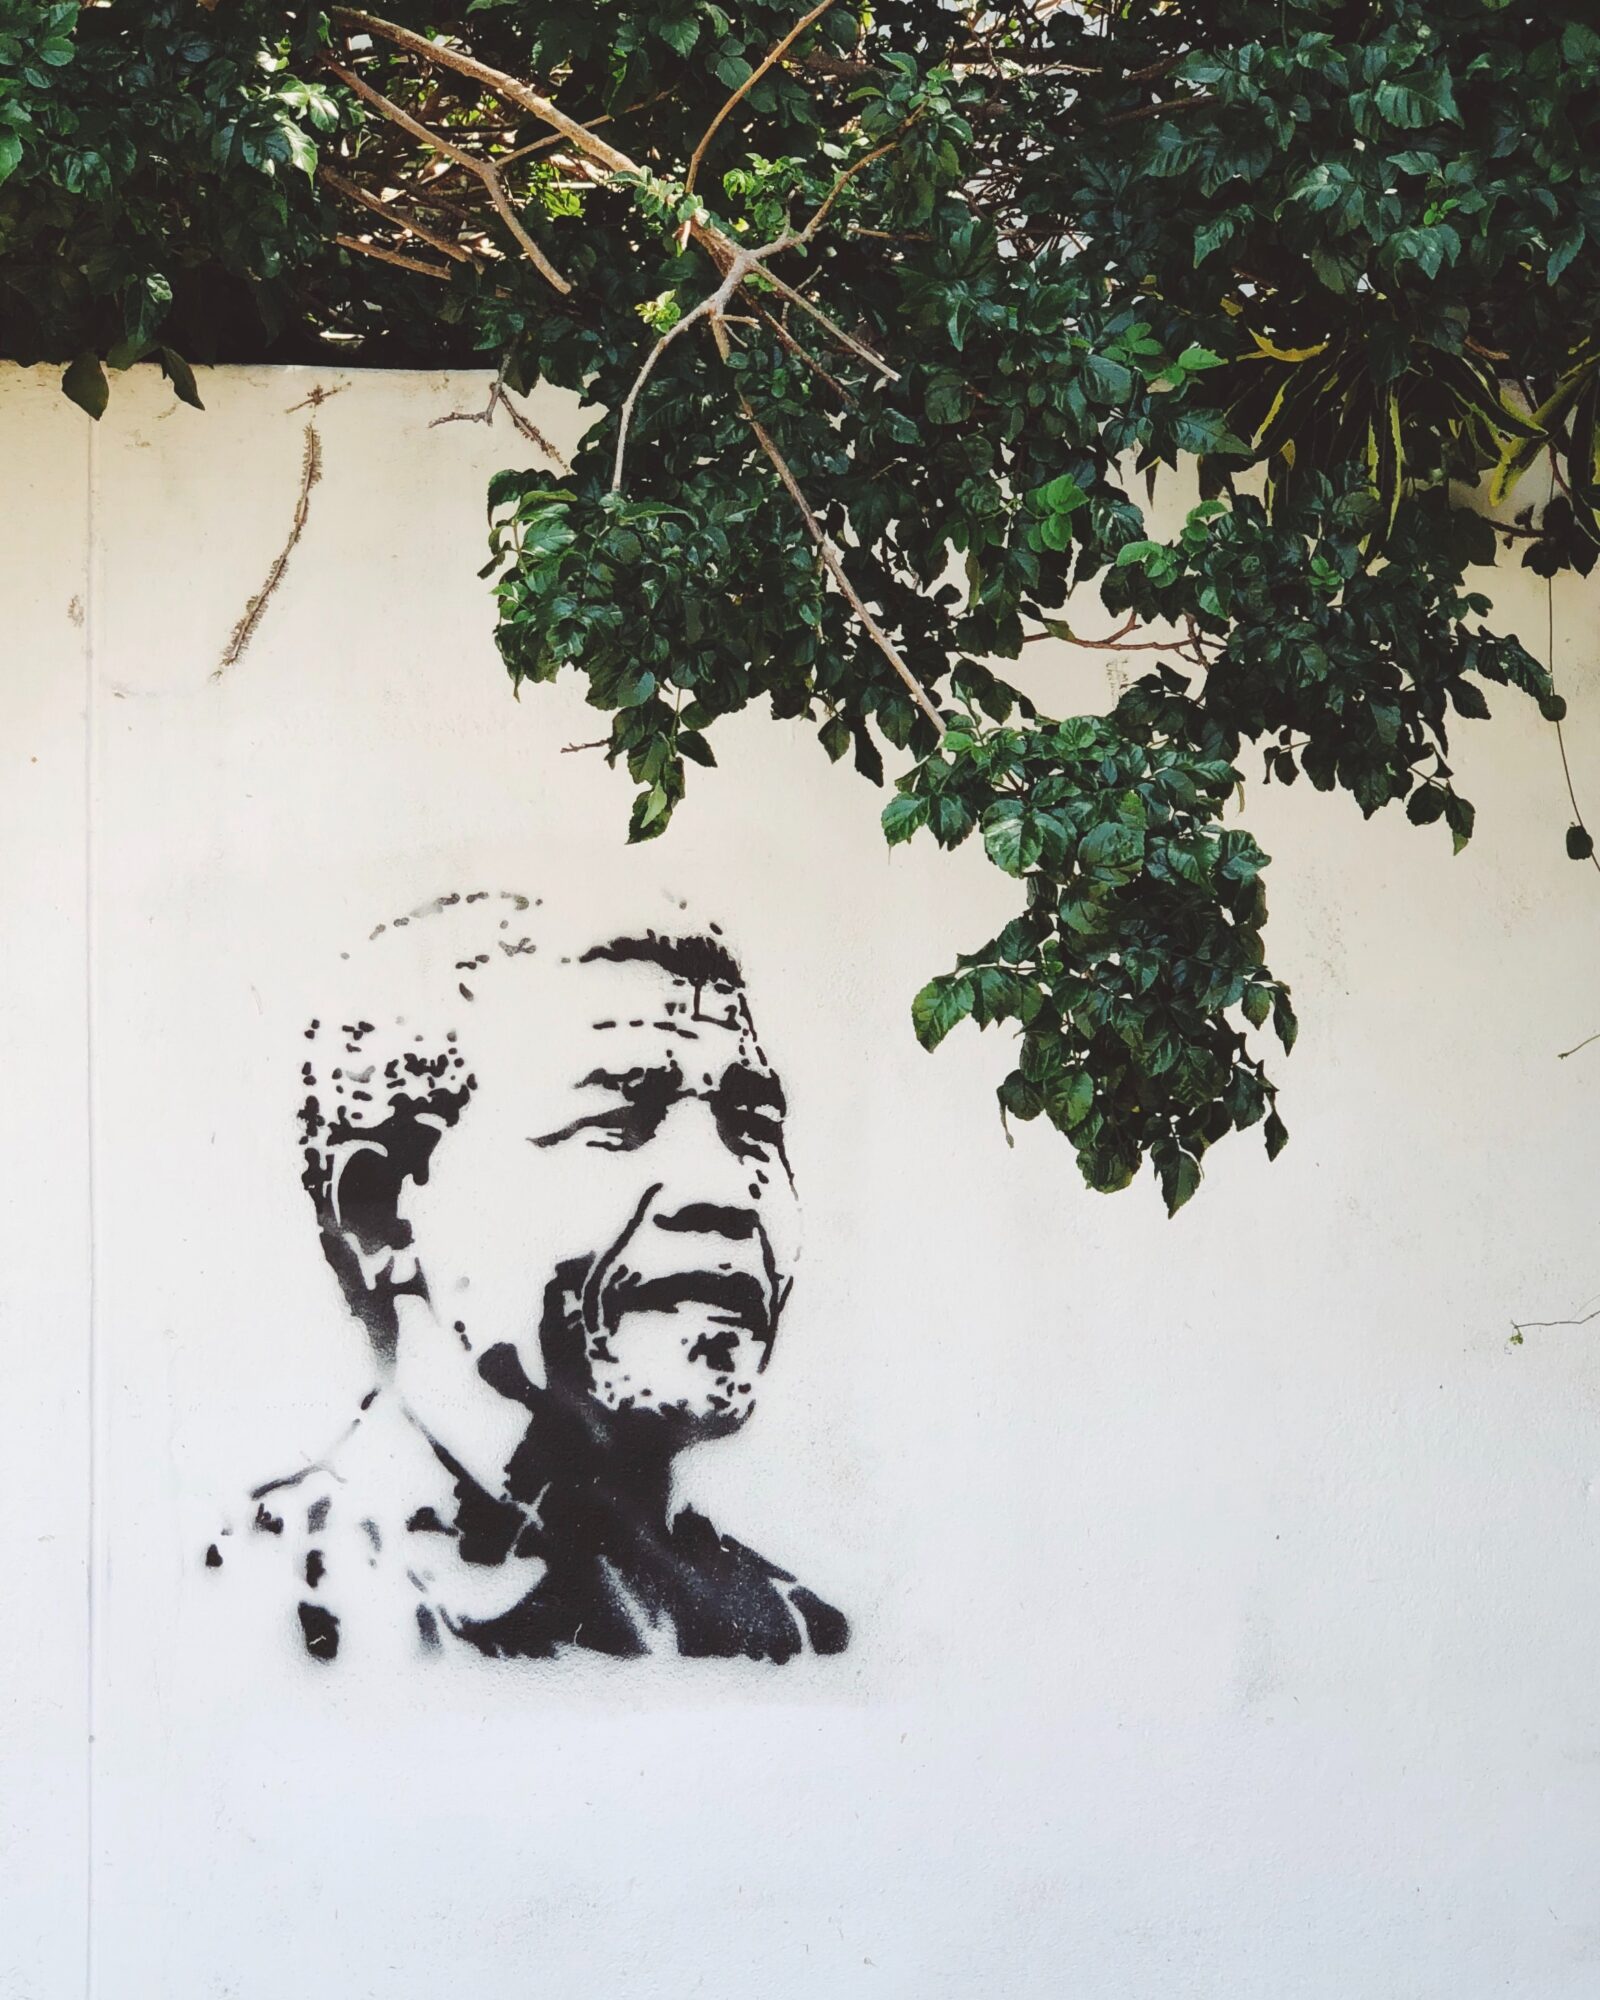 نيلسون مانديلا رحلة من الزنزانة إلى الزعامة